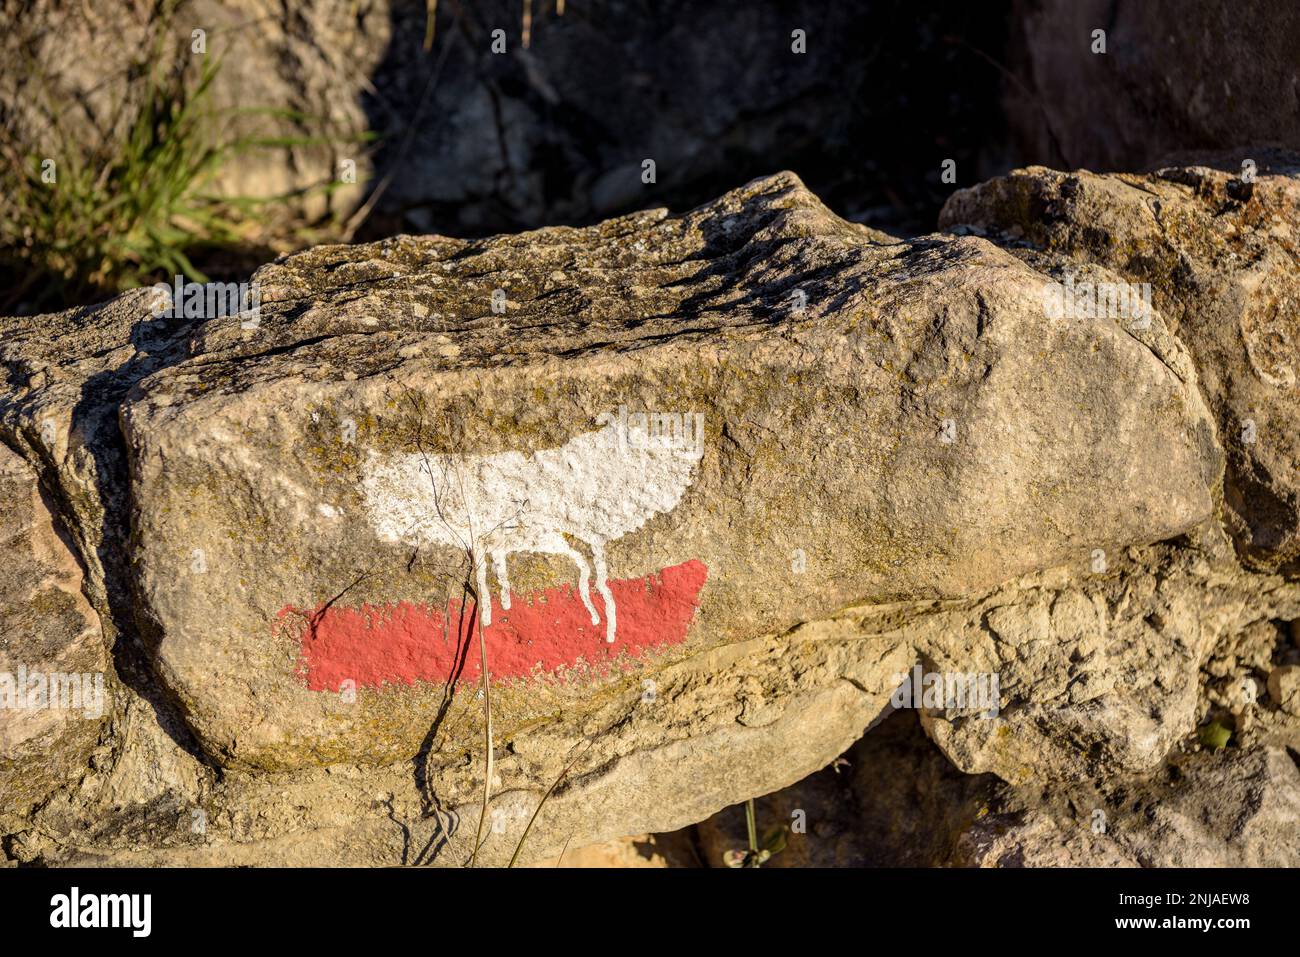 GR-1 segno su una roccia sul sentiero per la gola del Mont-rebei (Montsec, Lleida, Catalogna, Spagna) ESP: Señal del GR-1 en una roca en la senda (Cataluña) Foto Stock